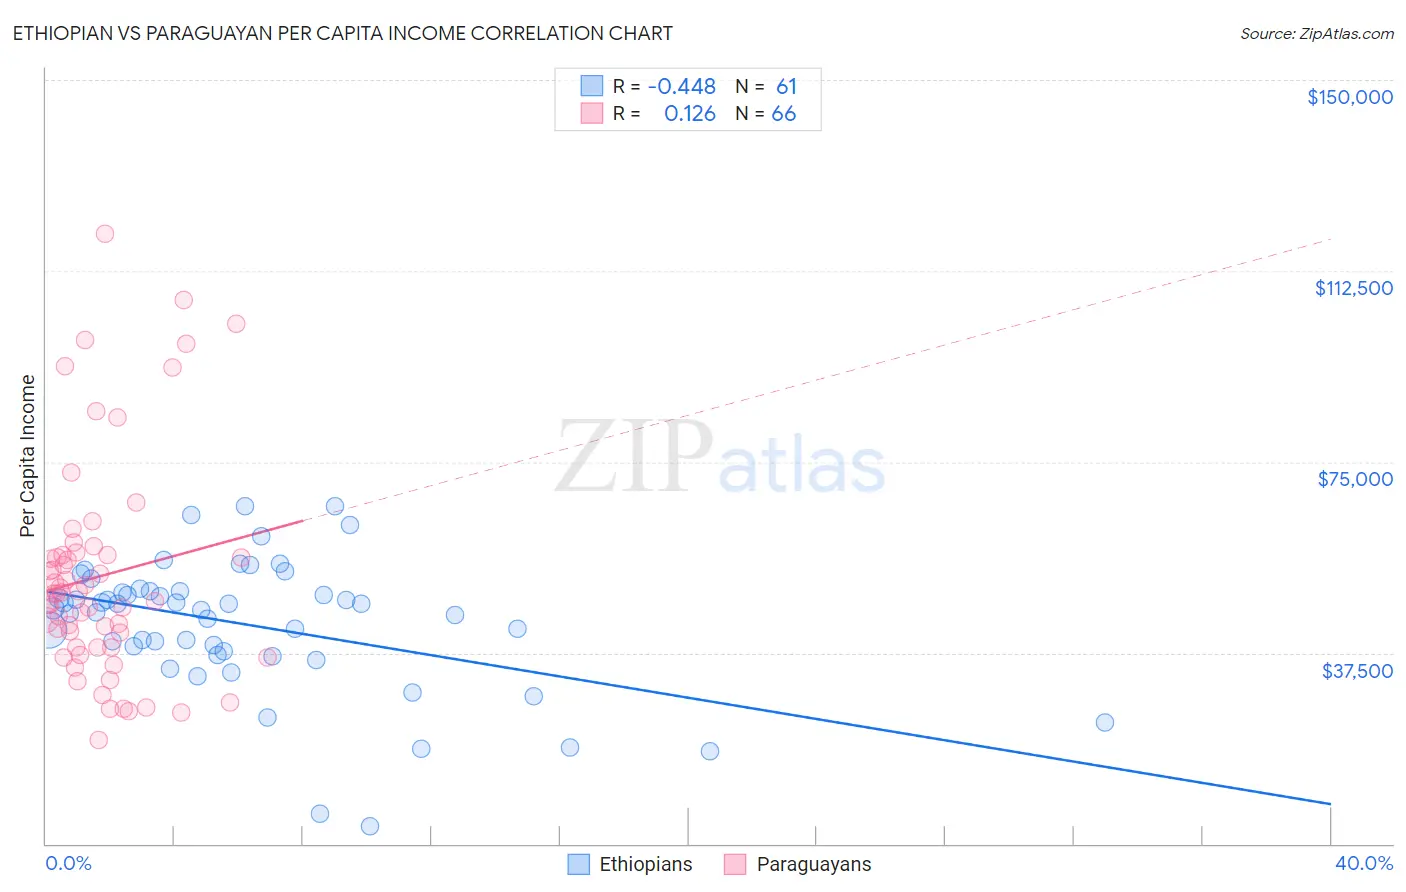 Ethiopian vs Paraguayan Per Capita Income